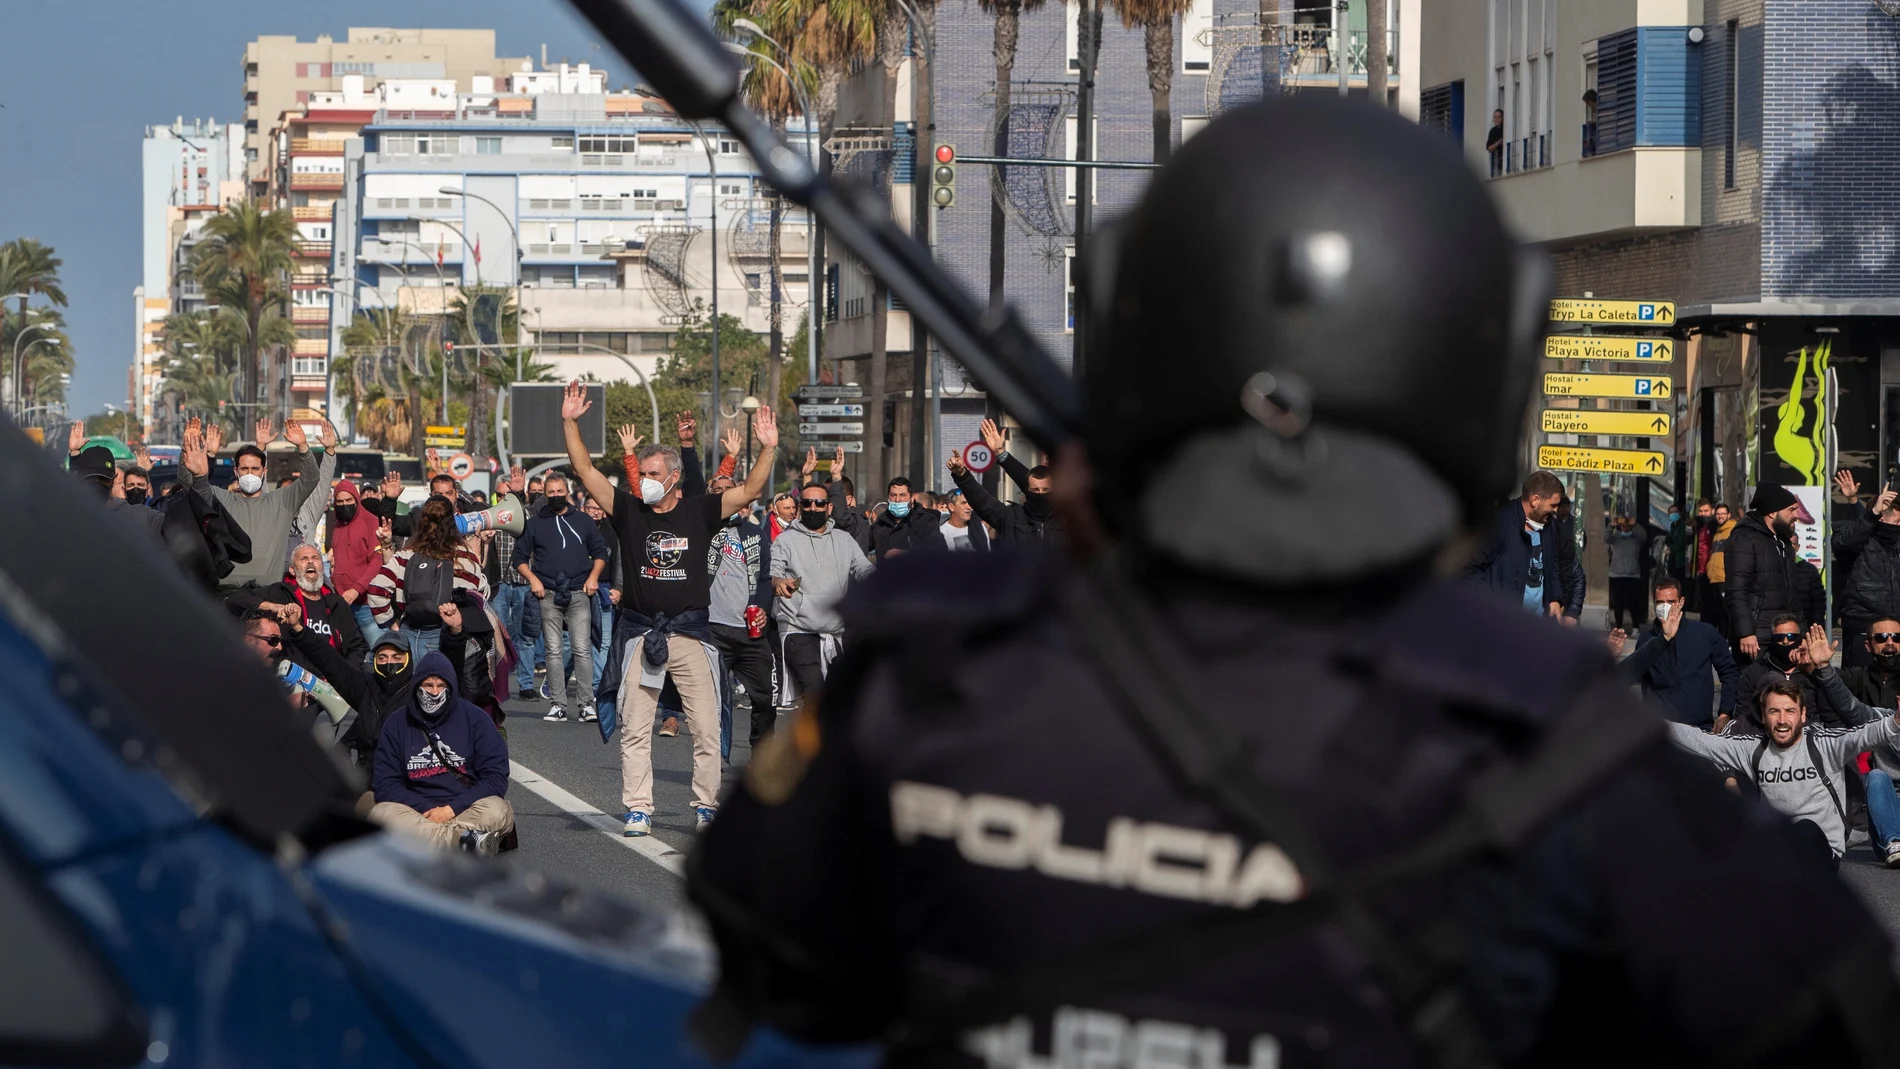 Los piquetes de los trabajadores del metal de Cádiz cortan el tráfico en el puente de hierro, único acceso por carretera hasta el astillero de Navantia en San Fernando, en las protestas de las semanas pasadas